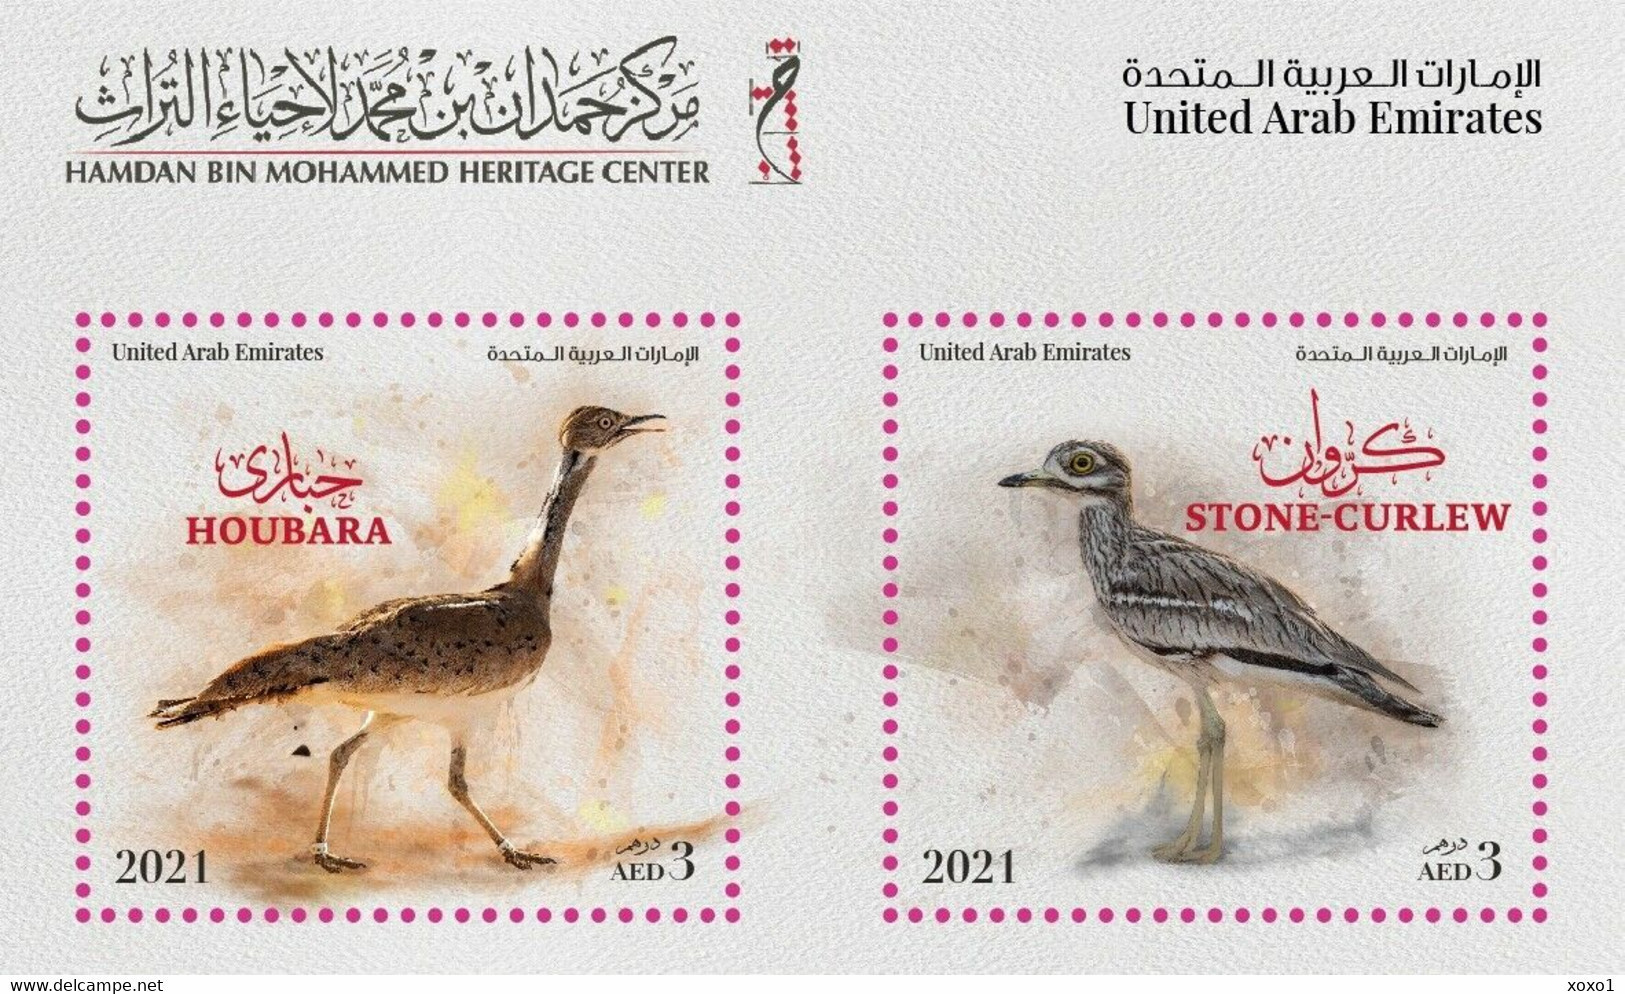 UAE 2021 MiNr. 1312 - 1313 (Block 112) Vereinigte Arabische Emirate Birds S\sh MNH**  6,00 € - Emirats Arabes Unis (Général)